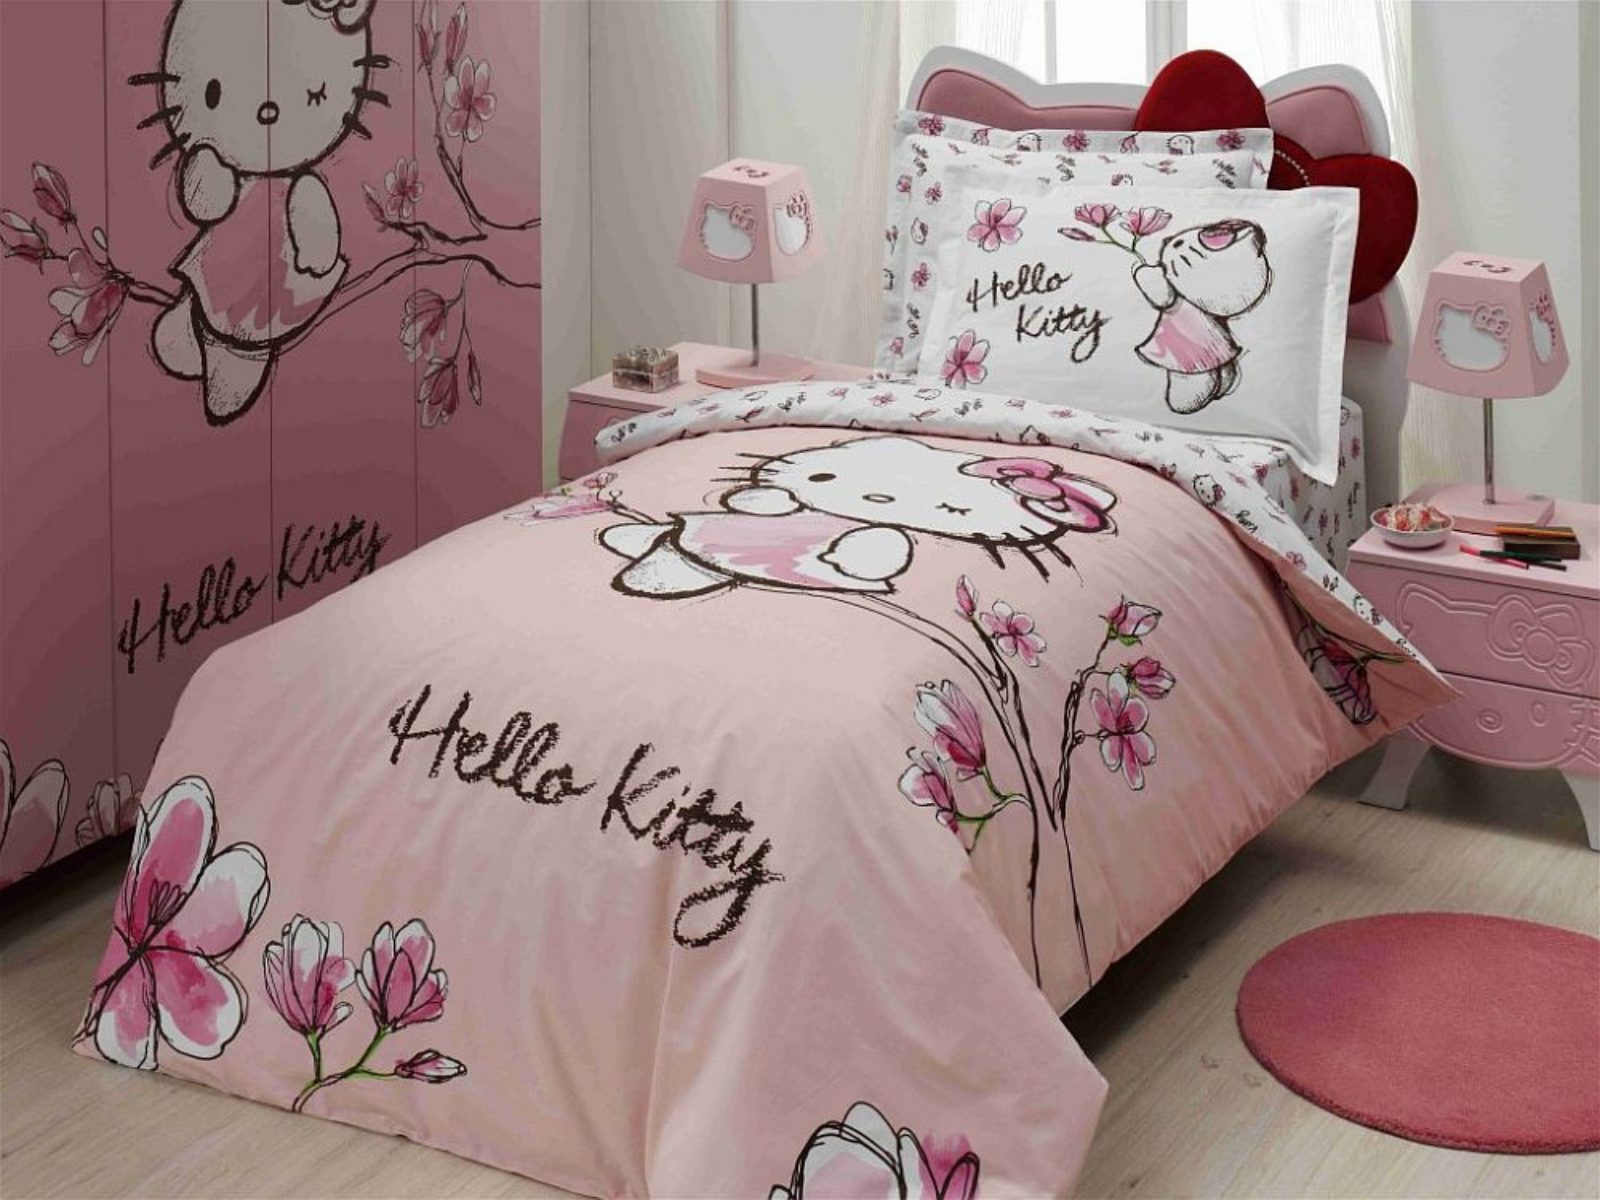 Sử dụng các phụ kiện trang trí như gối nệm, chăn, tranh treo và đèn ngủ có hình Hello Kitty